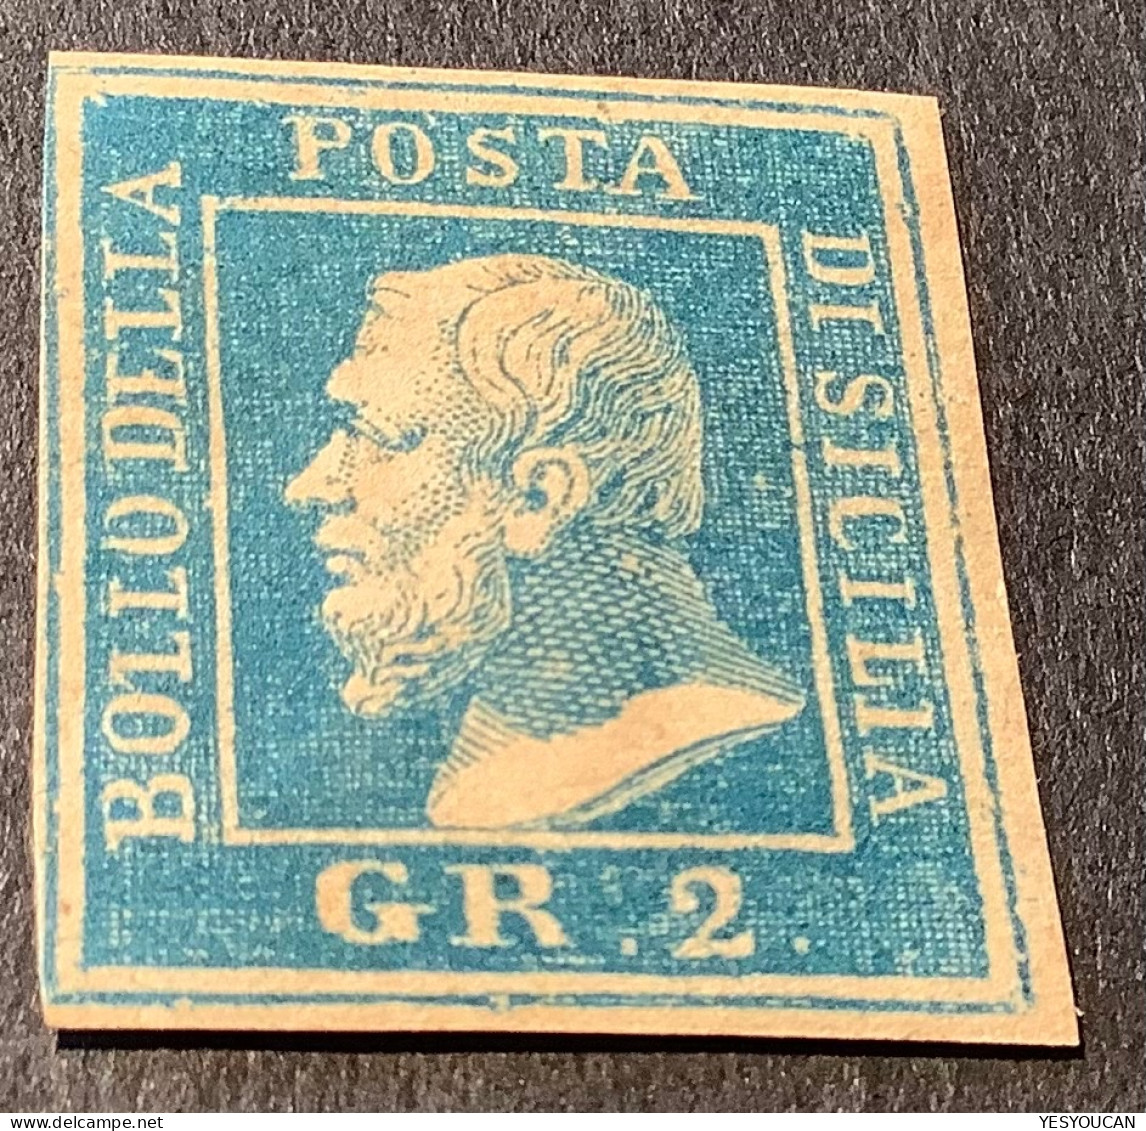 Sicilia 1859 Rare Lithographic Forgery (falso) Or Essay (saggi)? (Sicily Sicile Italy Italia Italie Essai/faux ? - Sicile